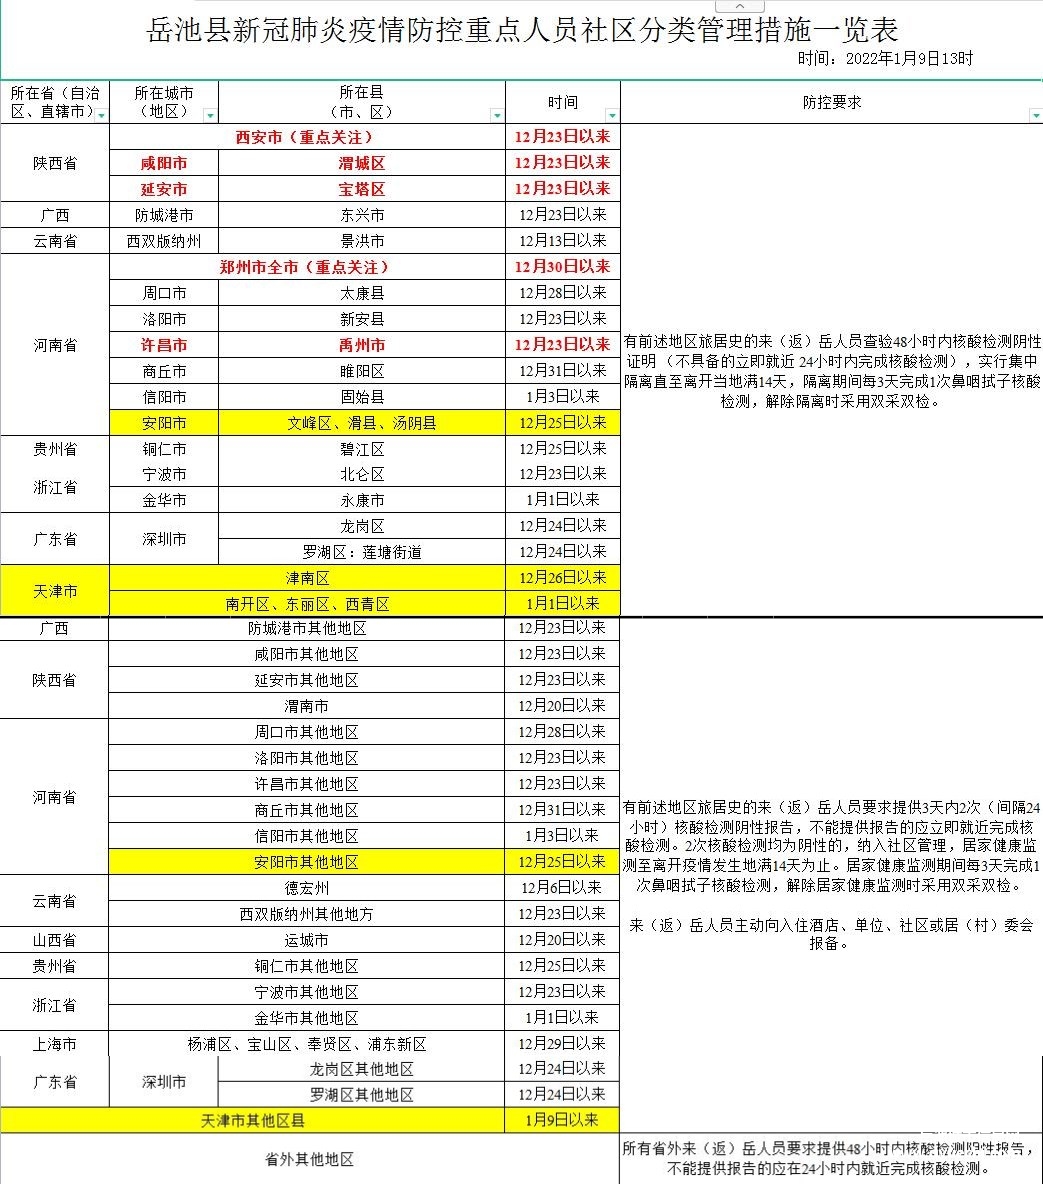 岳池县新冠肺炎疫情防控重点人员社区分类管理措施一览表（时间：2022年1月9日13时）